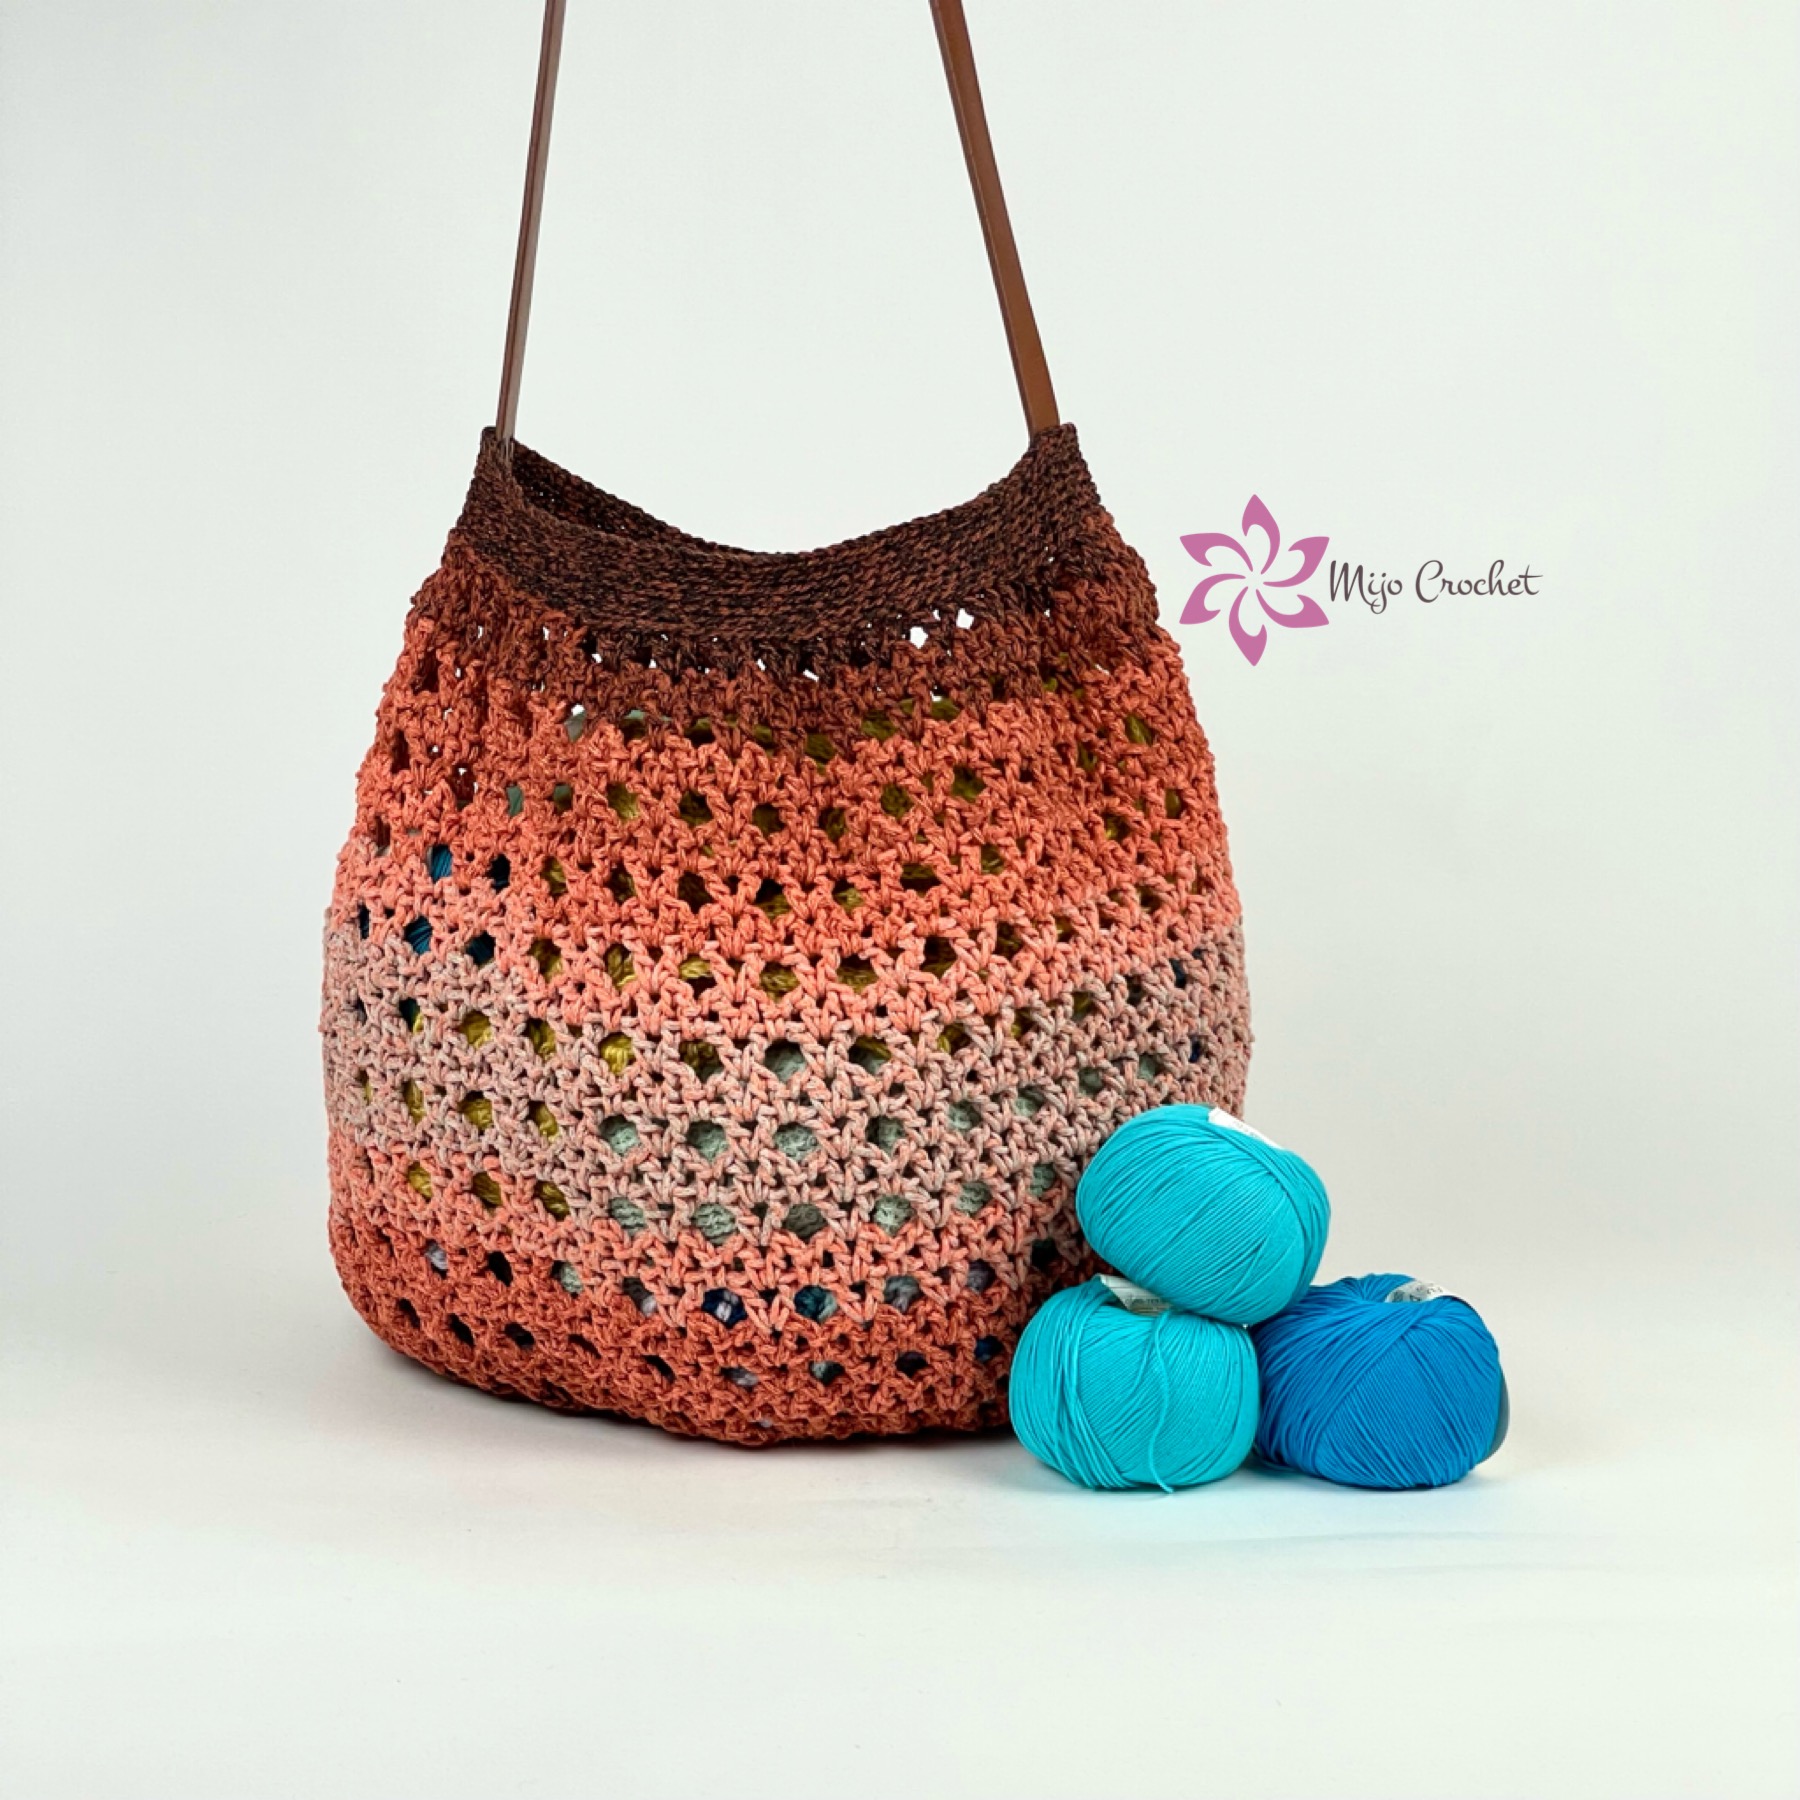 Tunisian no stretch bag strap using regular crochet hook 